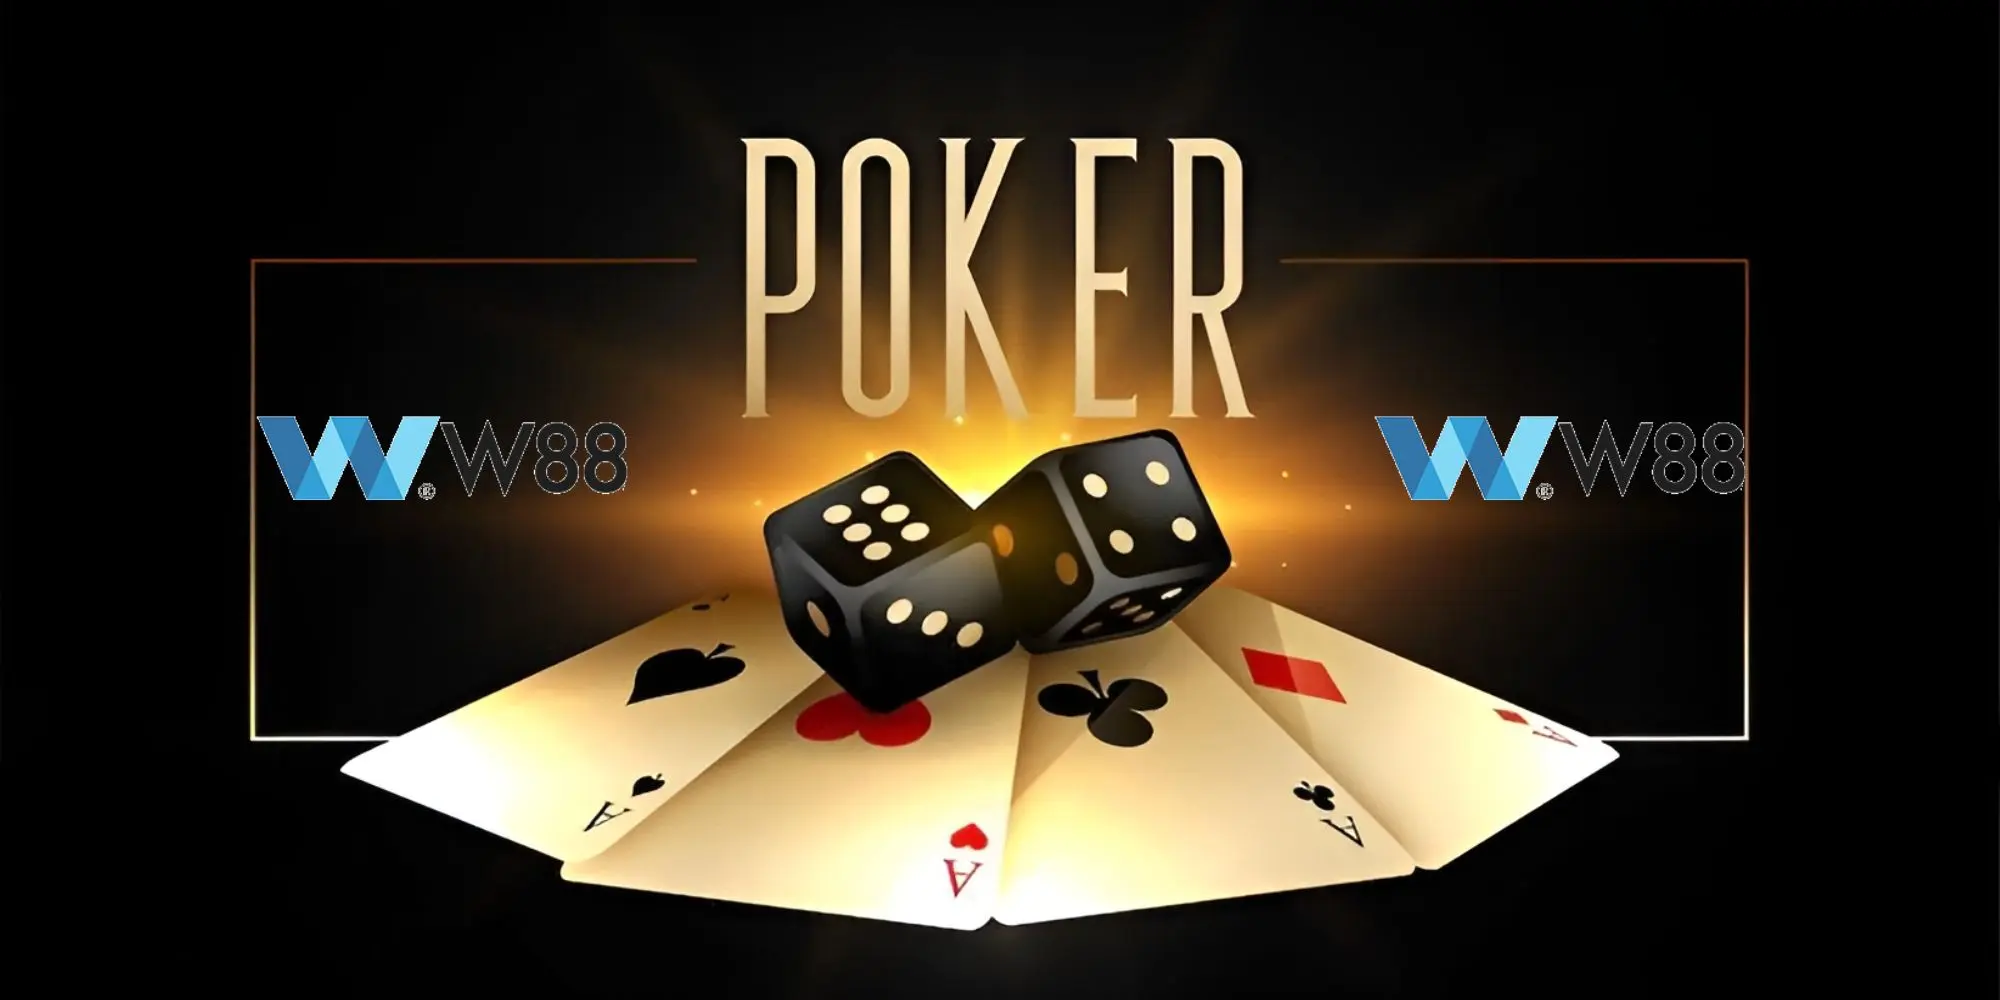 tải w88 poker